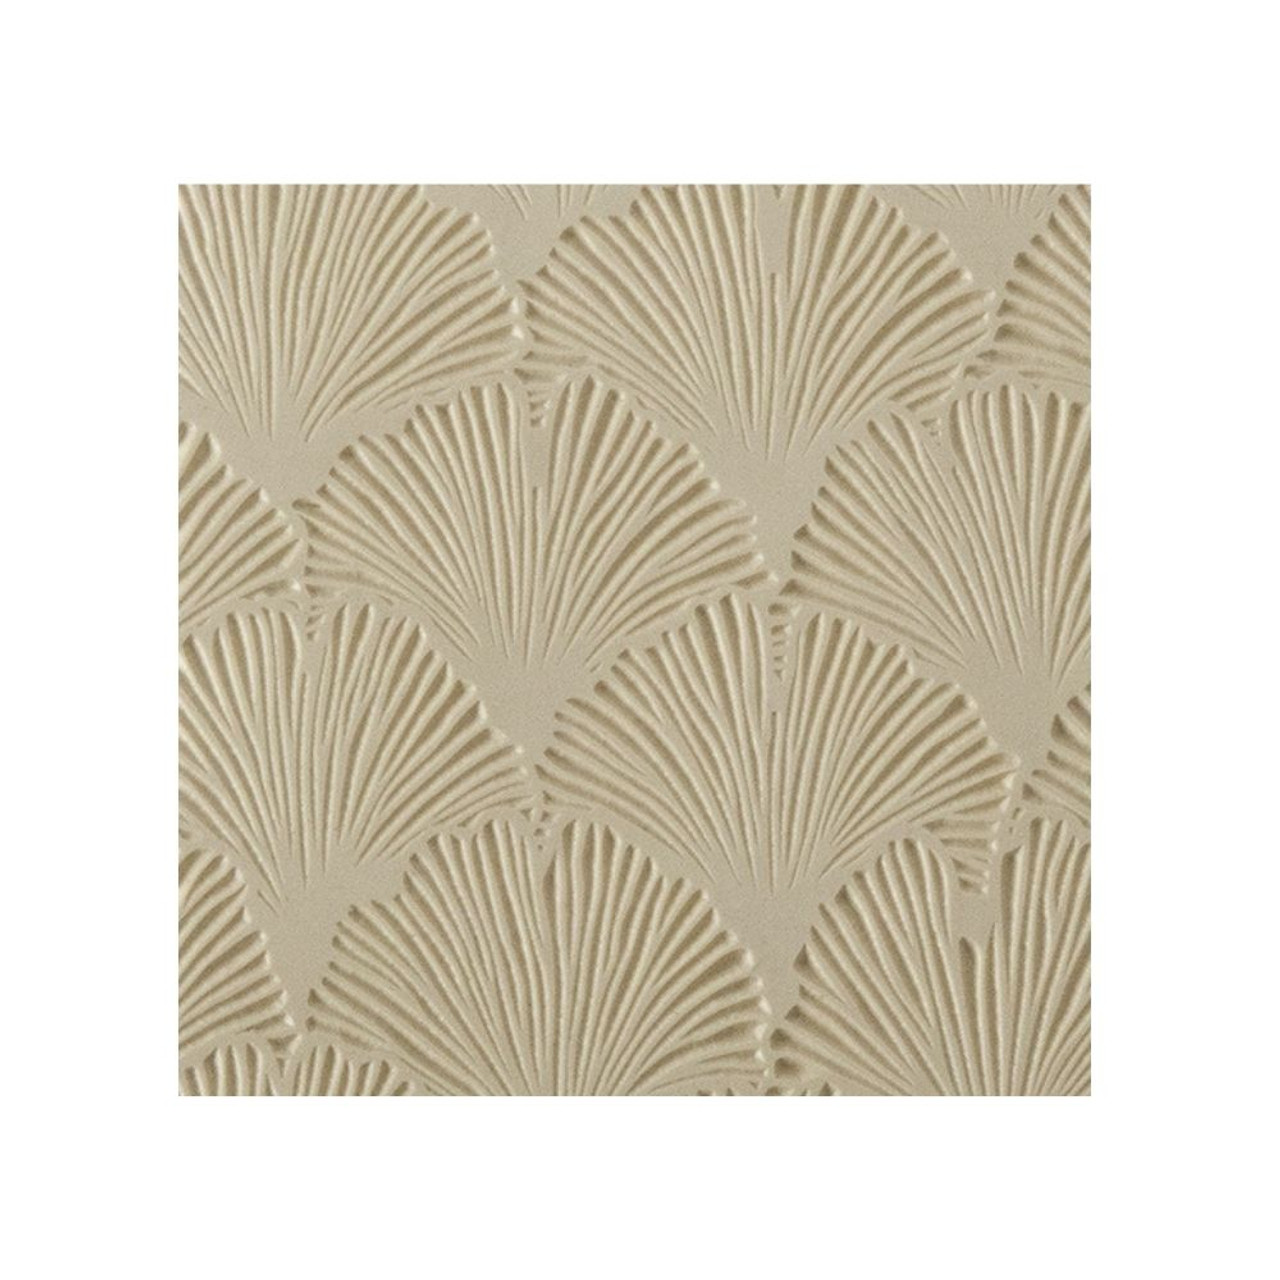 Texture Tile - Gingko Strokes 103-TTL-879